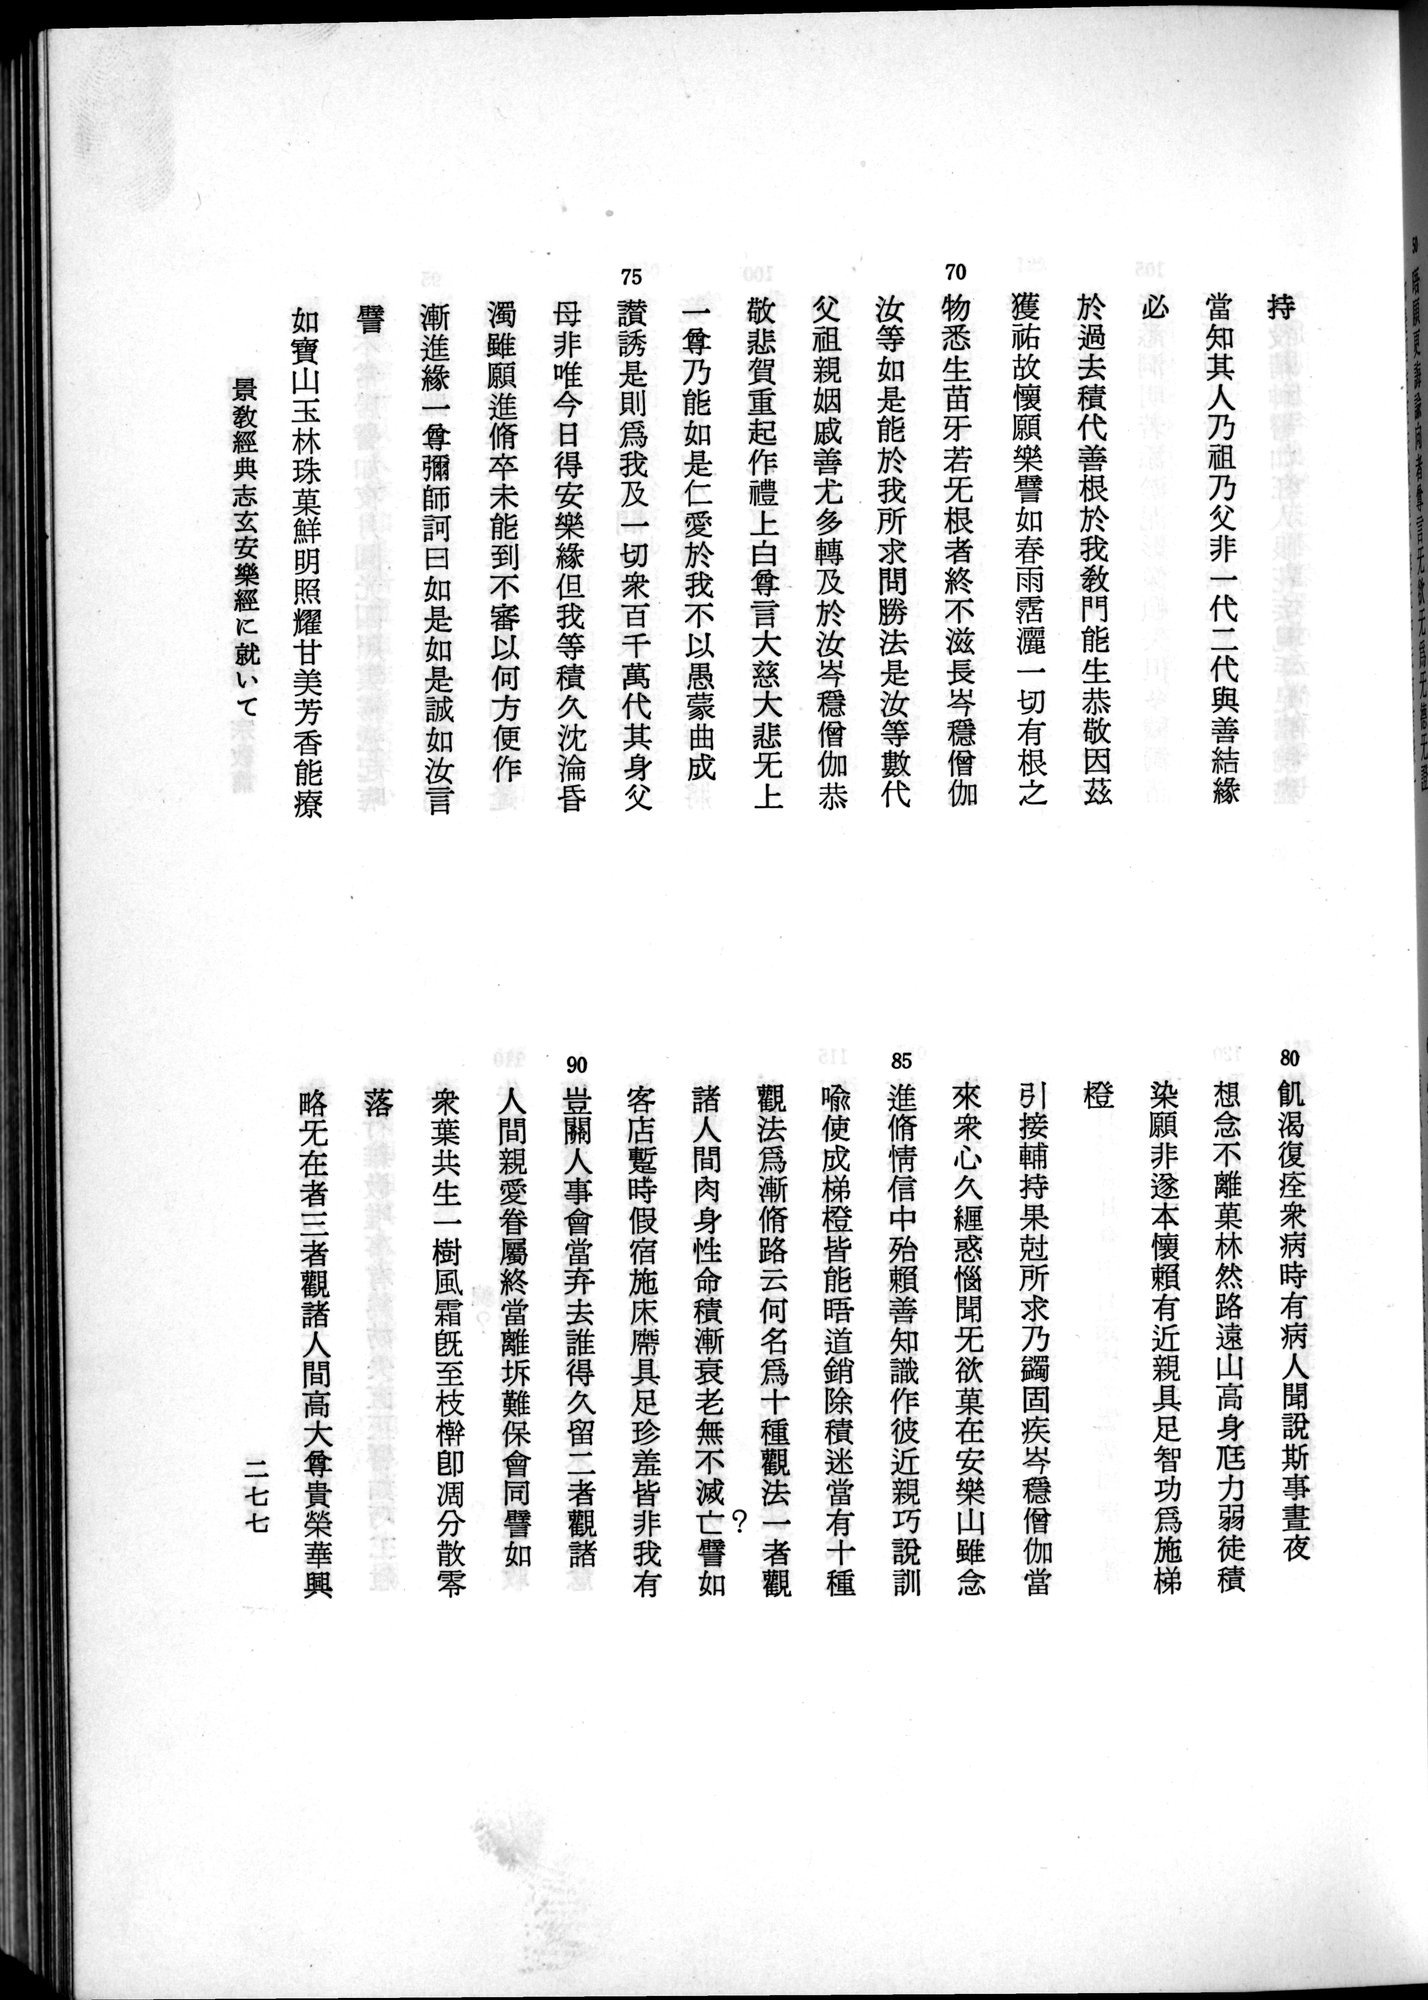 羽田博士史学論文集 : vol.2 / 339 ページ（白黒高解像度画像）